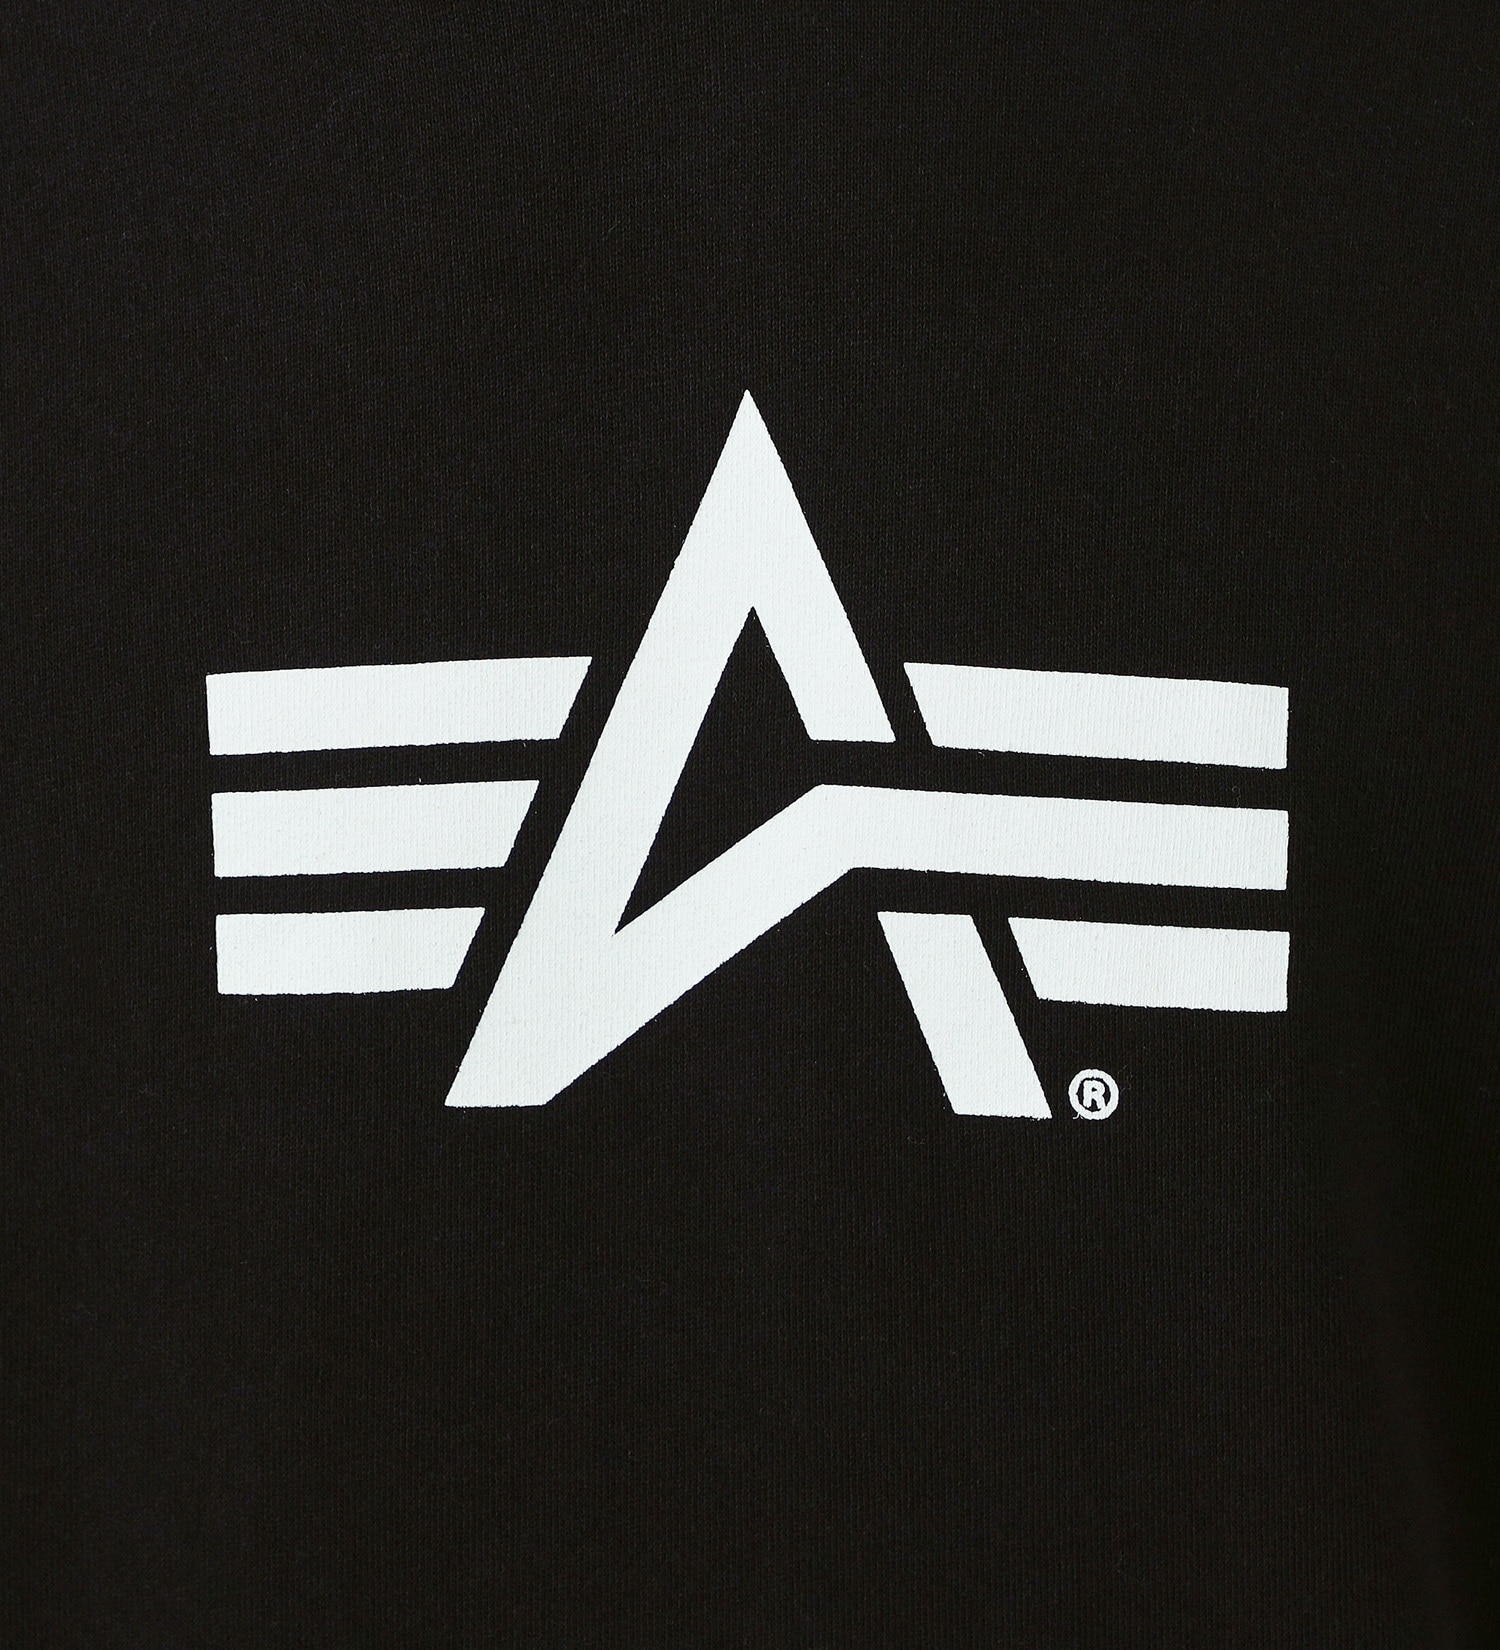 ALPHA(アルファ)のAマークプリント スウェットパーカー|トップス/パーカー/メンズ|ブラック